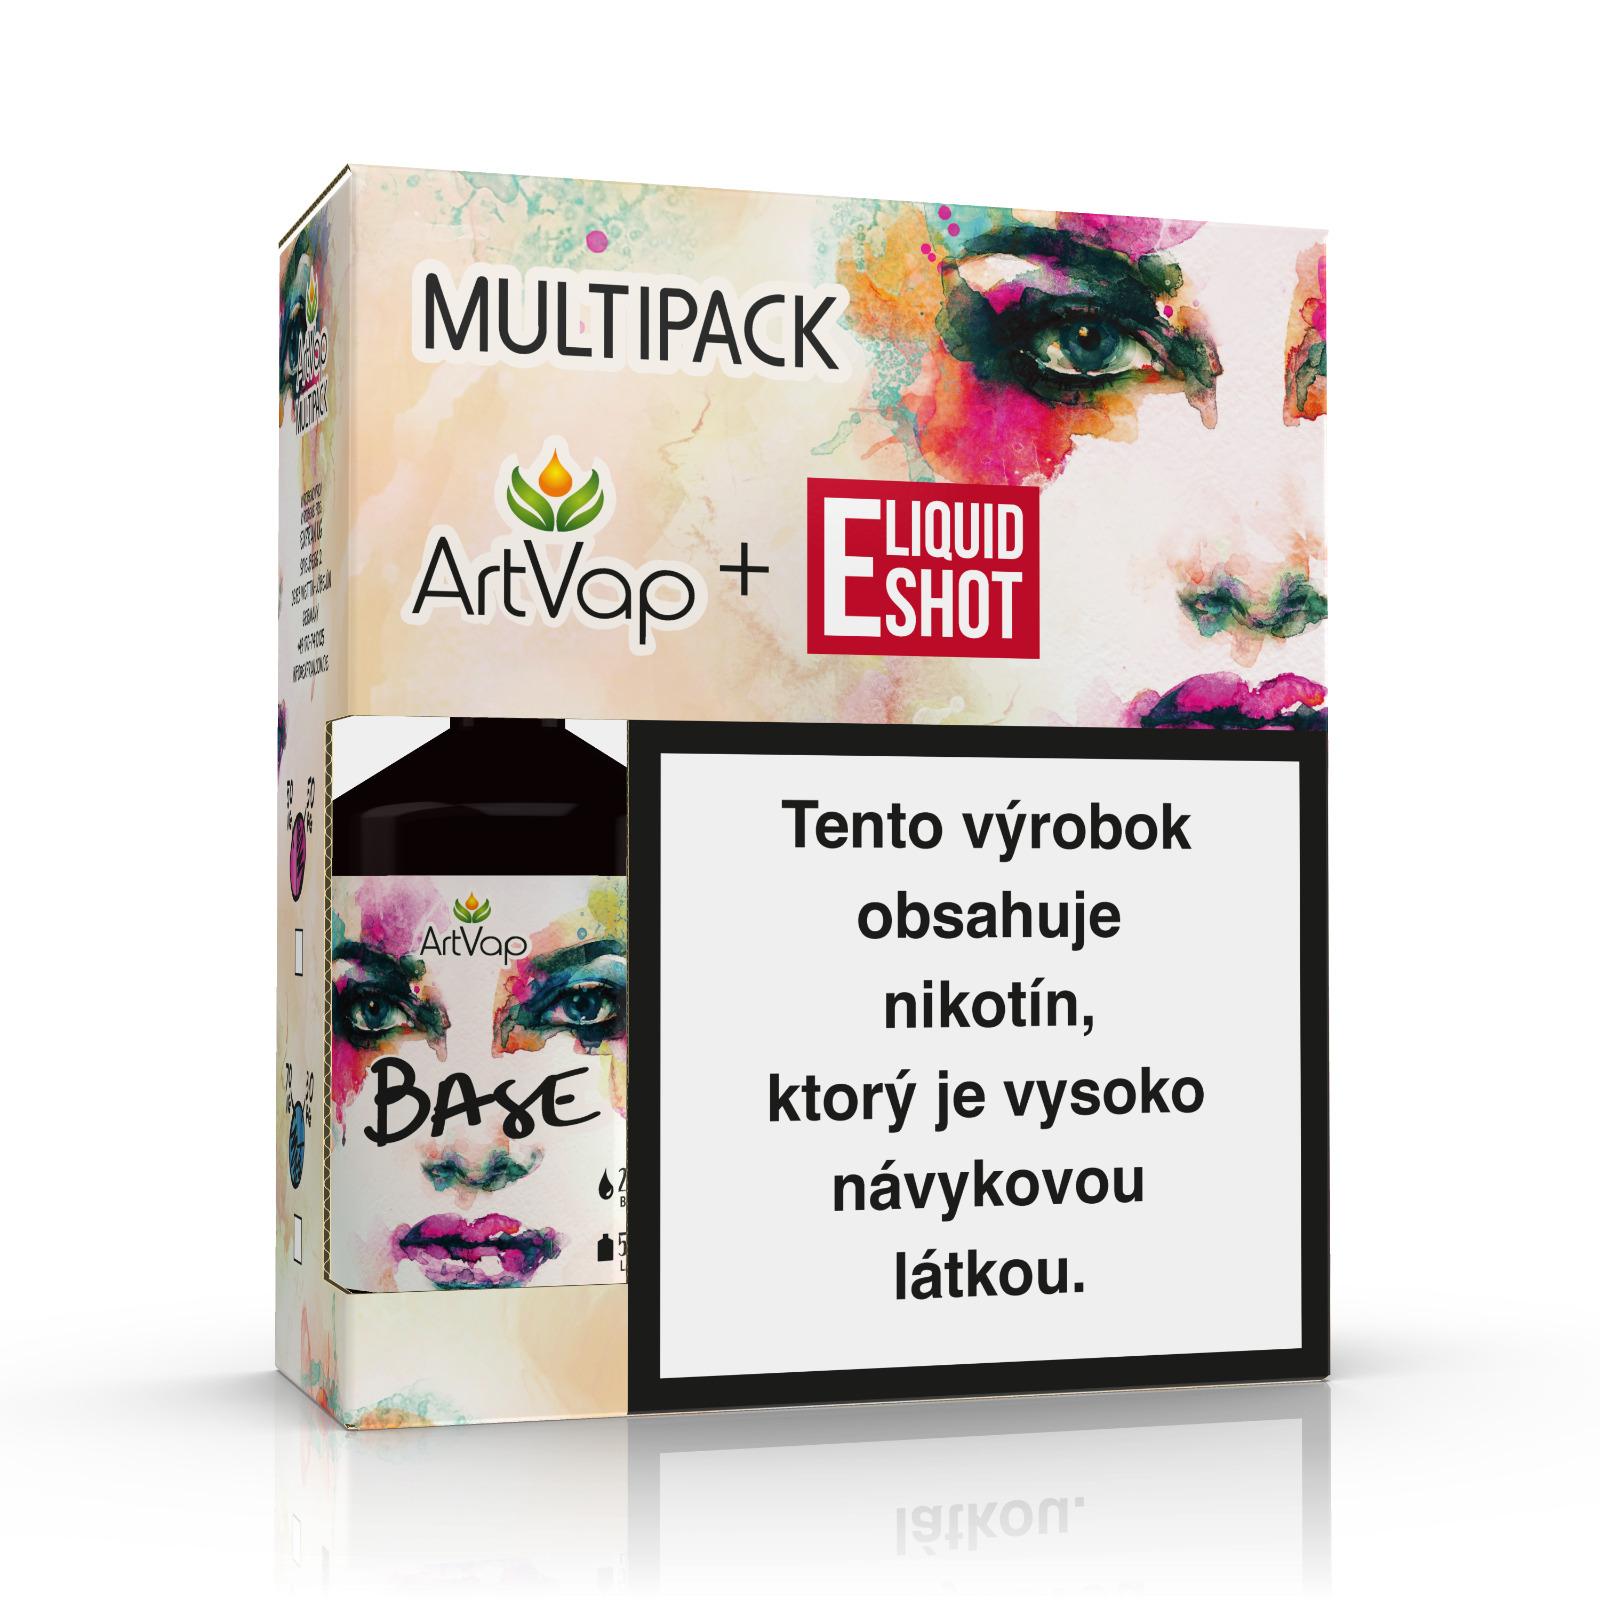 Multipack 500 ml 30PG/70VG 6 mg/ml